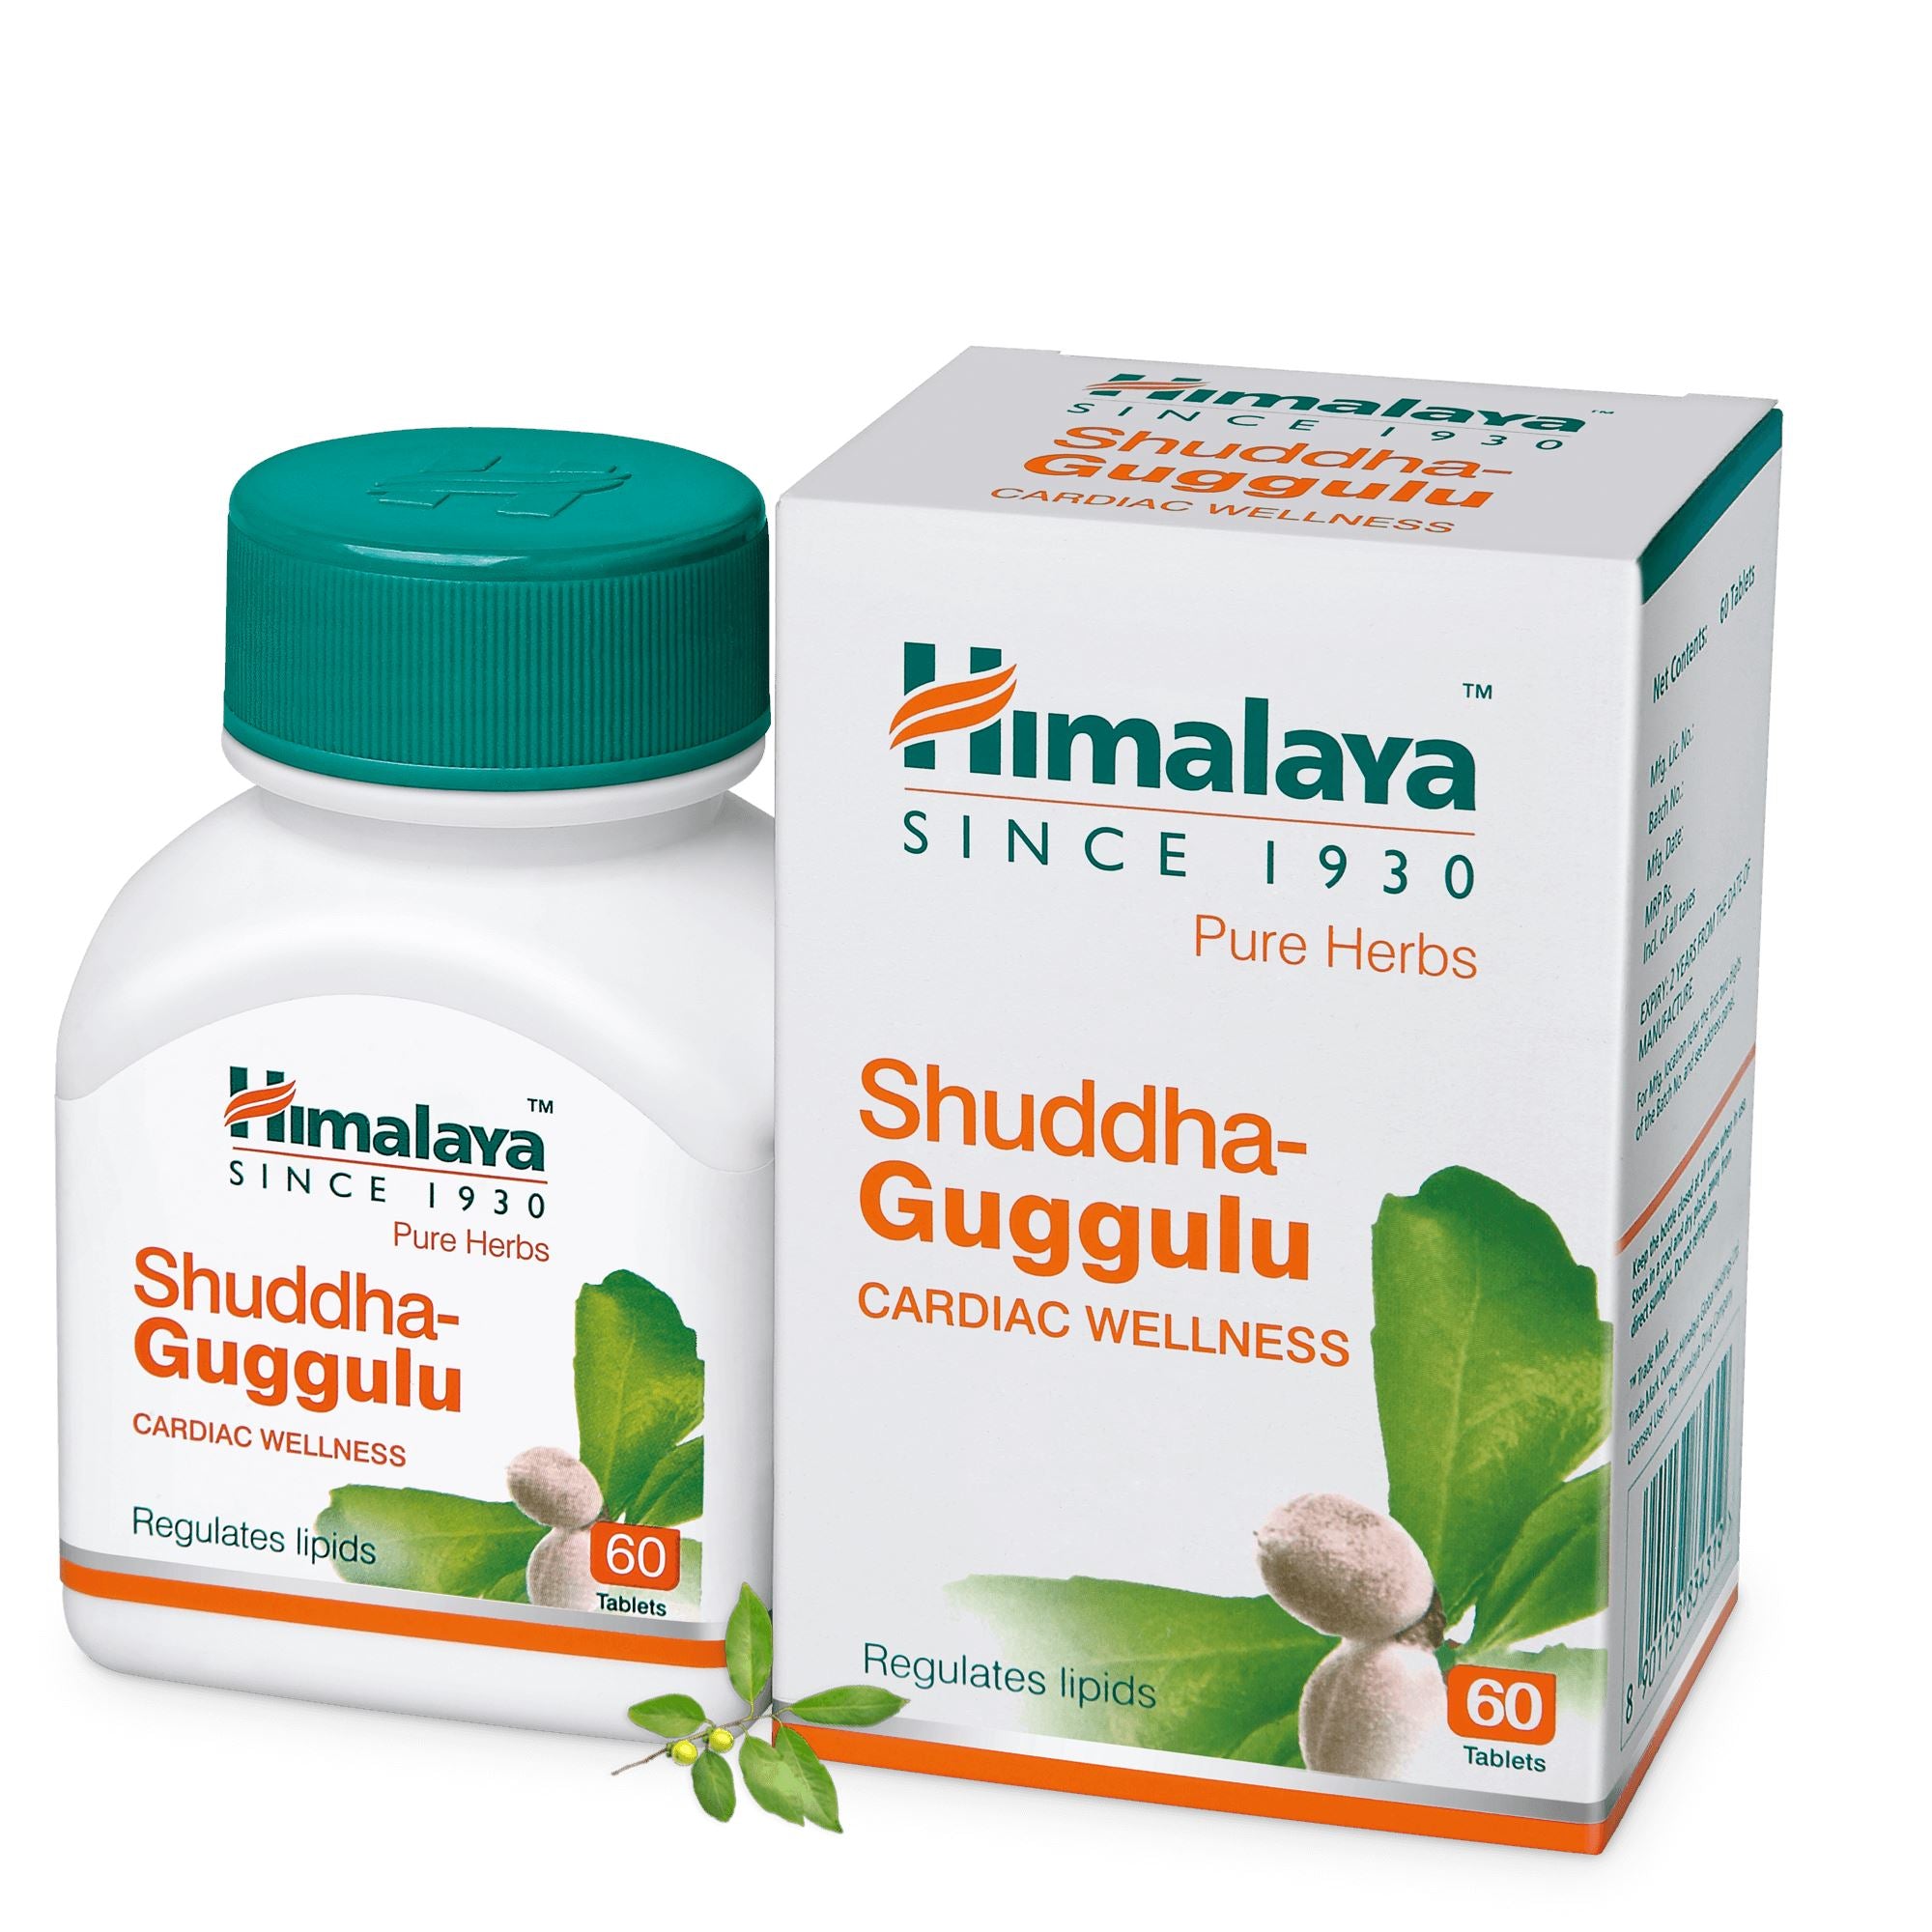 Himalaya Shuddha Guggulu - Regulates lipids